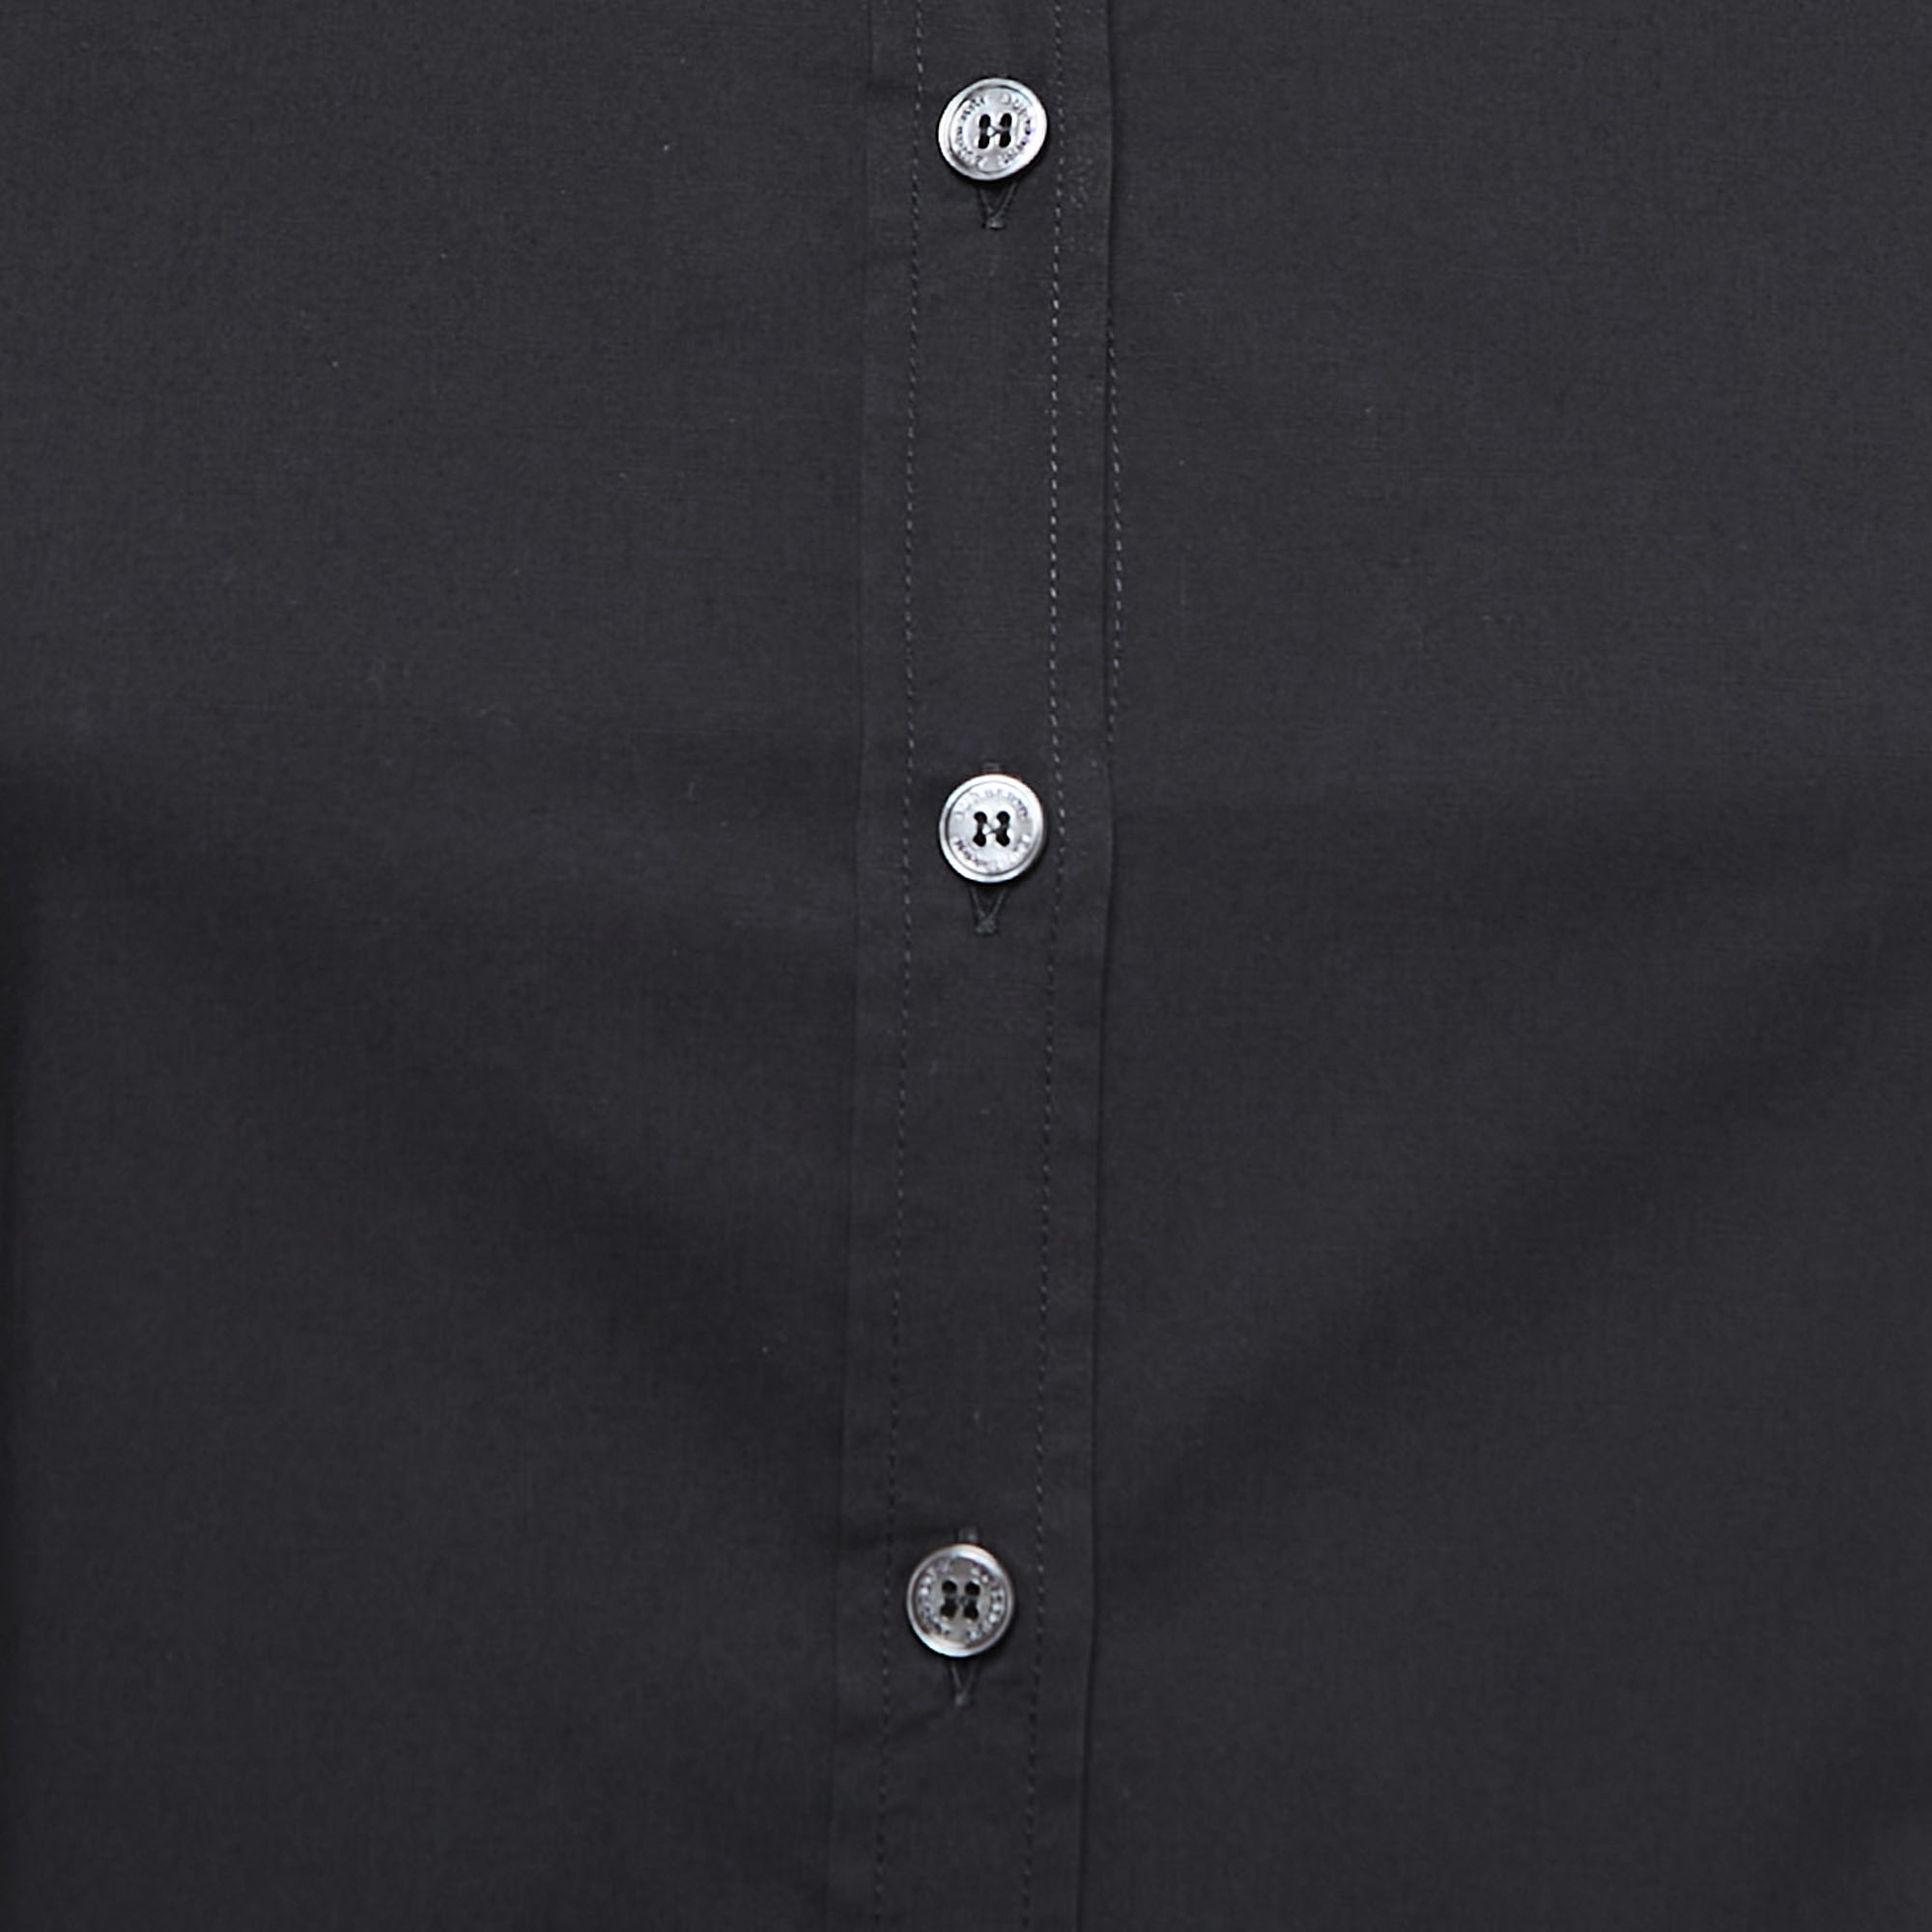 Burberry Brit Black Cotton Button Front Shirt XS